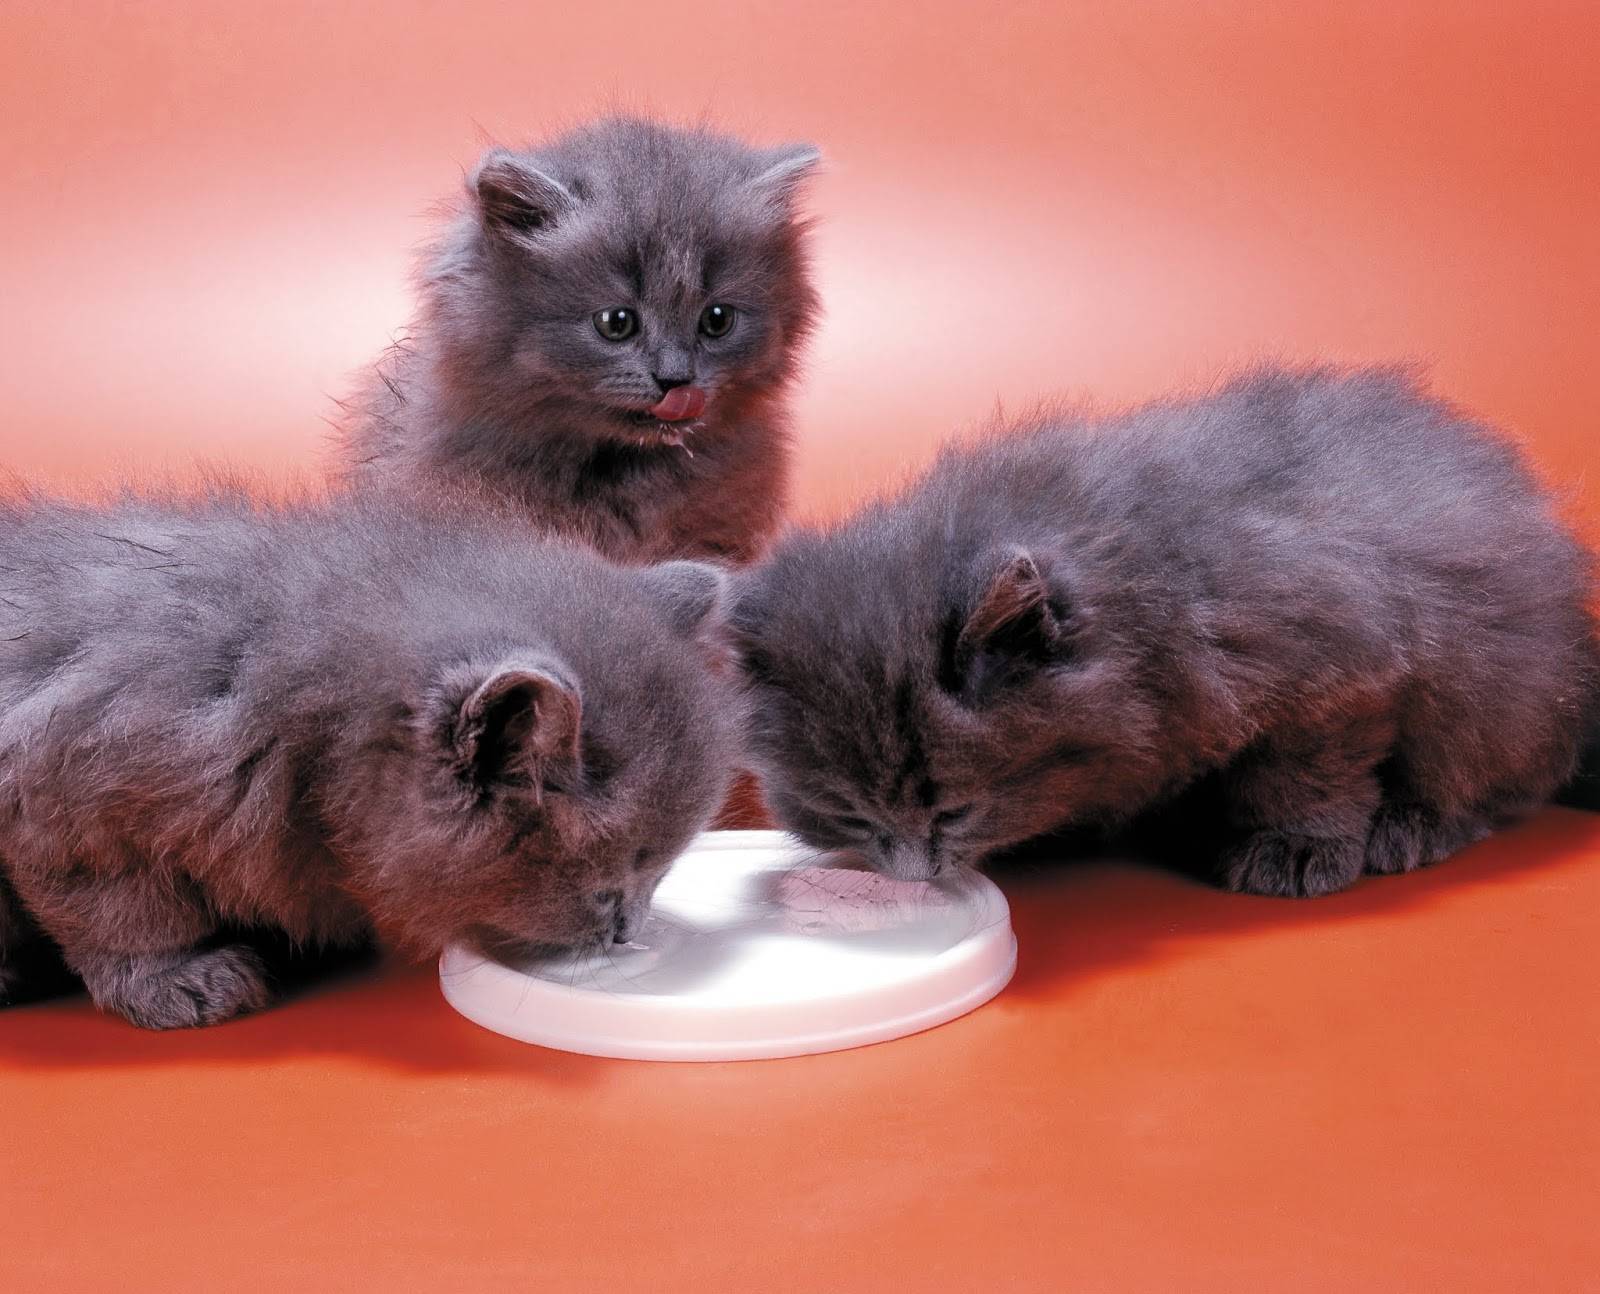 Персидская кошка (99 фото): как выглядит кот породы перс и каков его характер? корм для котят, описание черных, серых и голубых персидских кошек